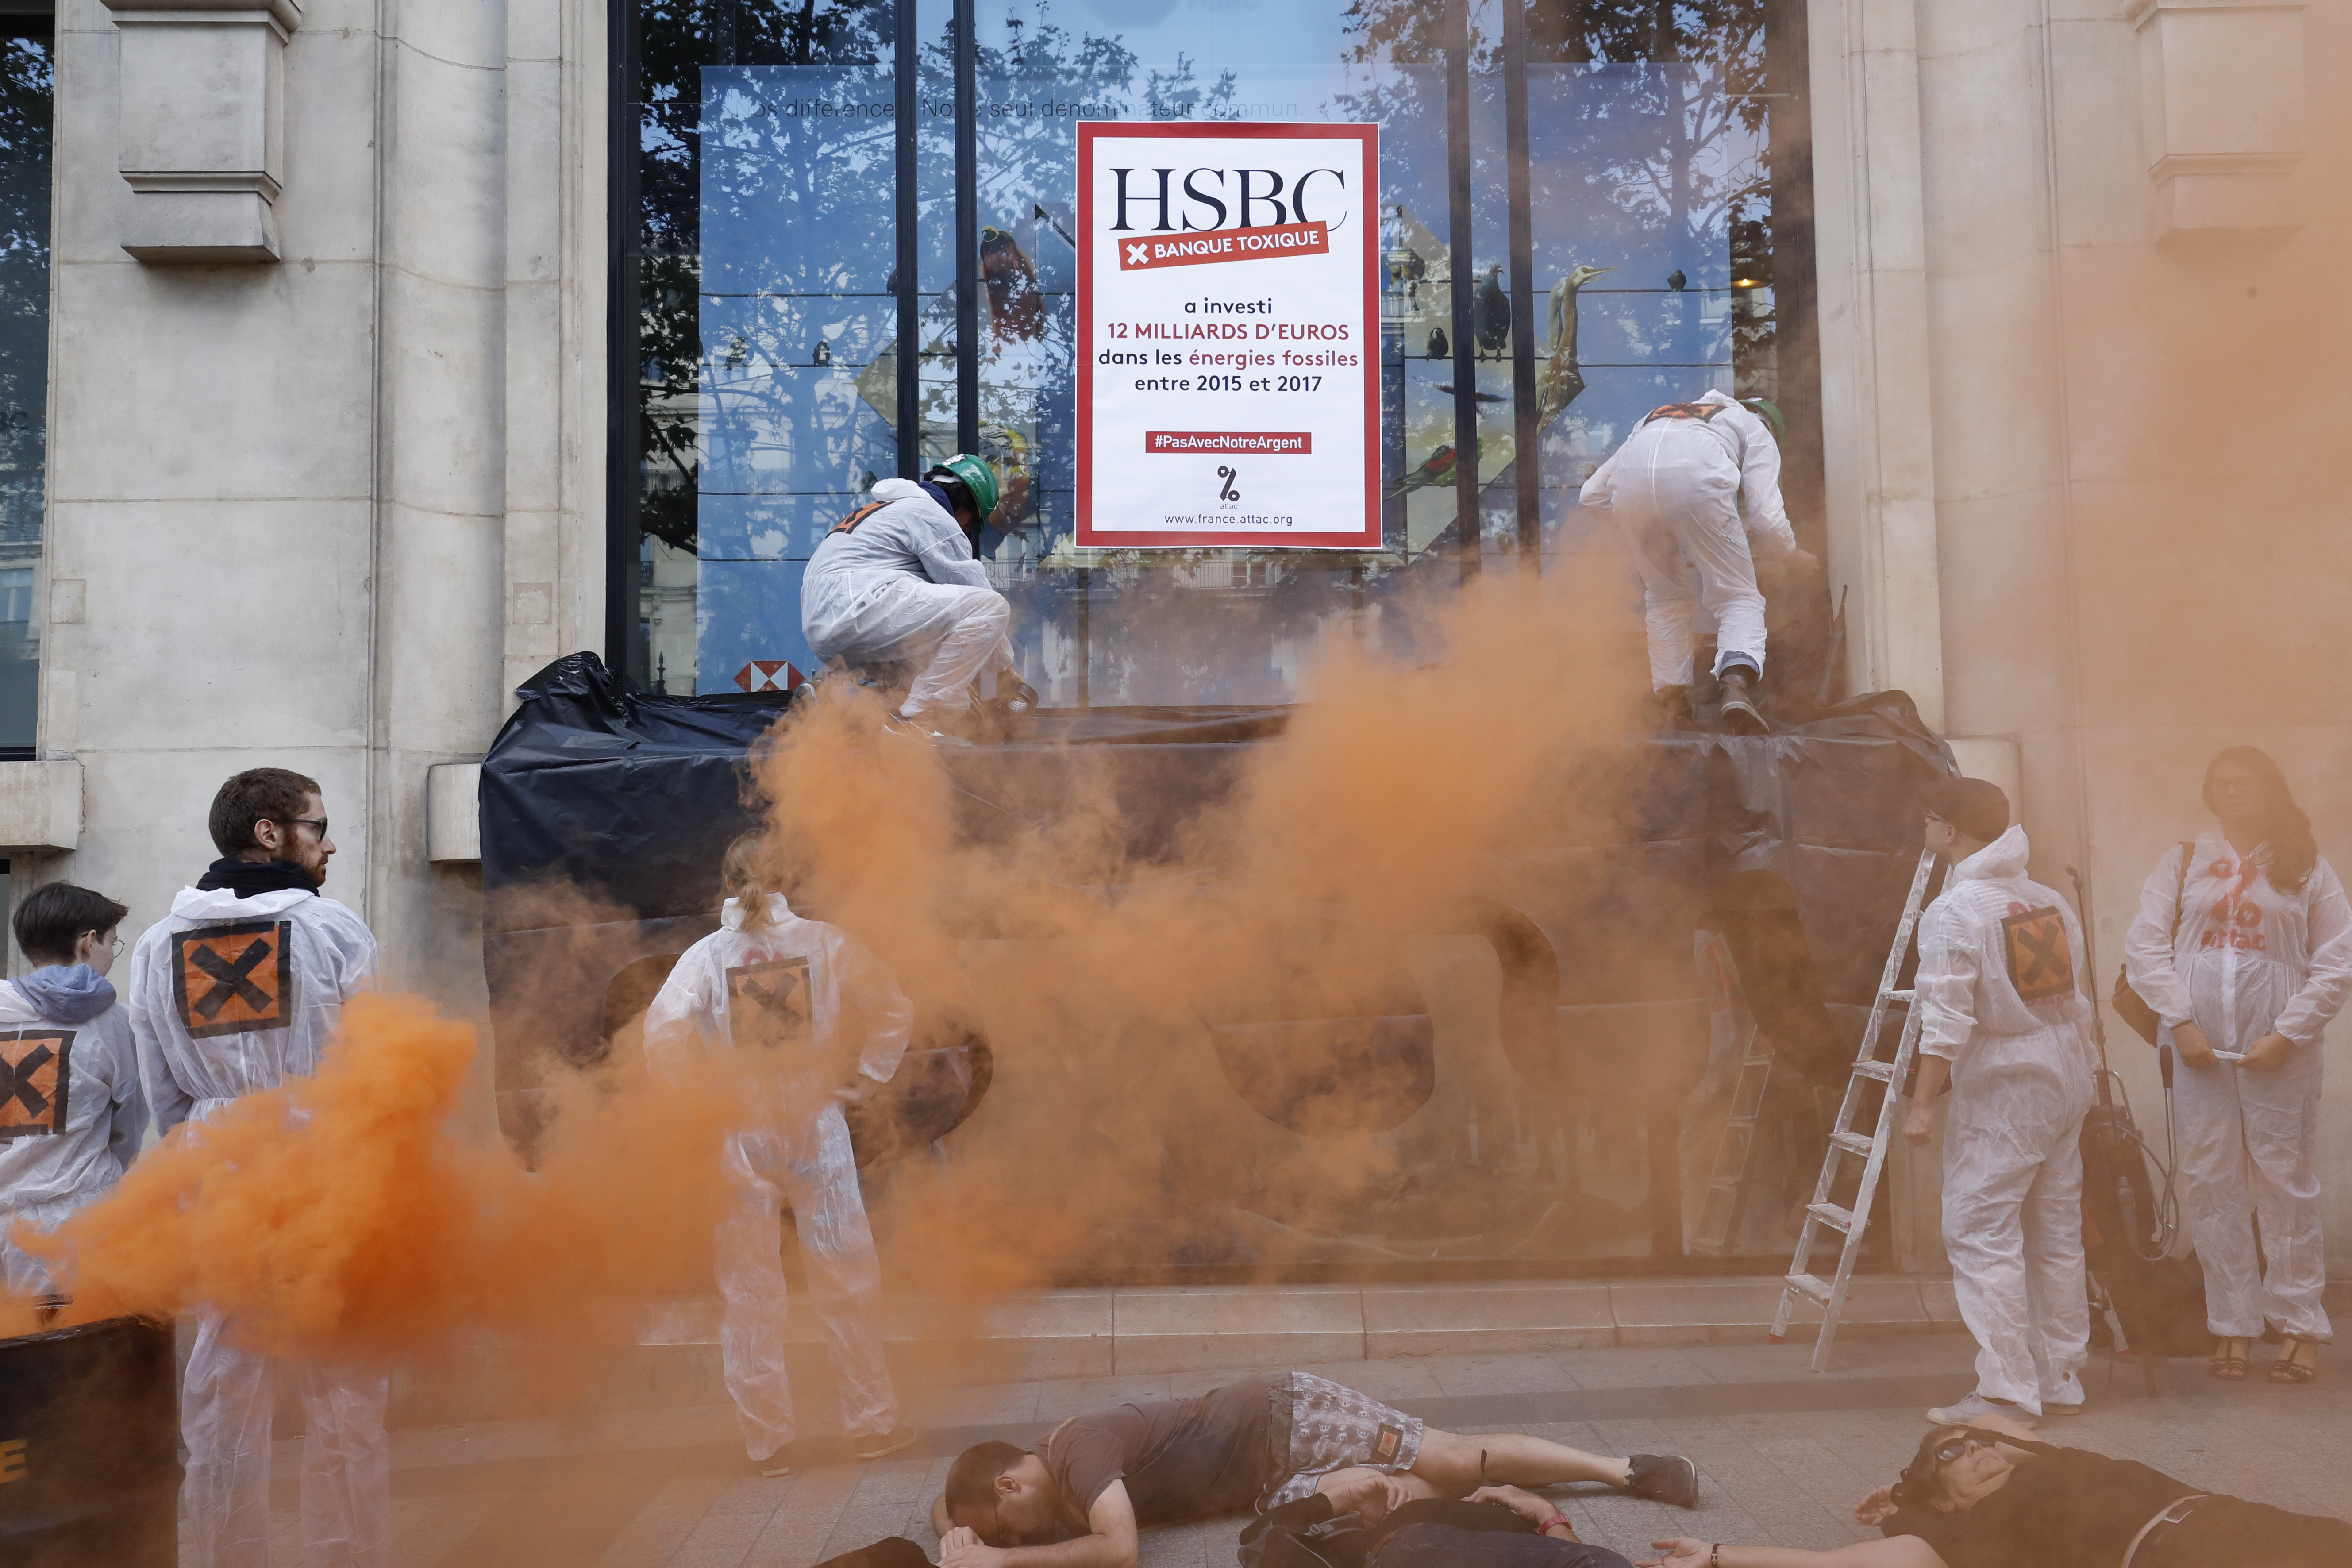 Párizsi bank épülete bánta a válság kitörésének tizedik évfordulóját